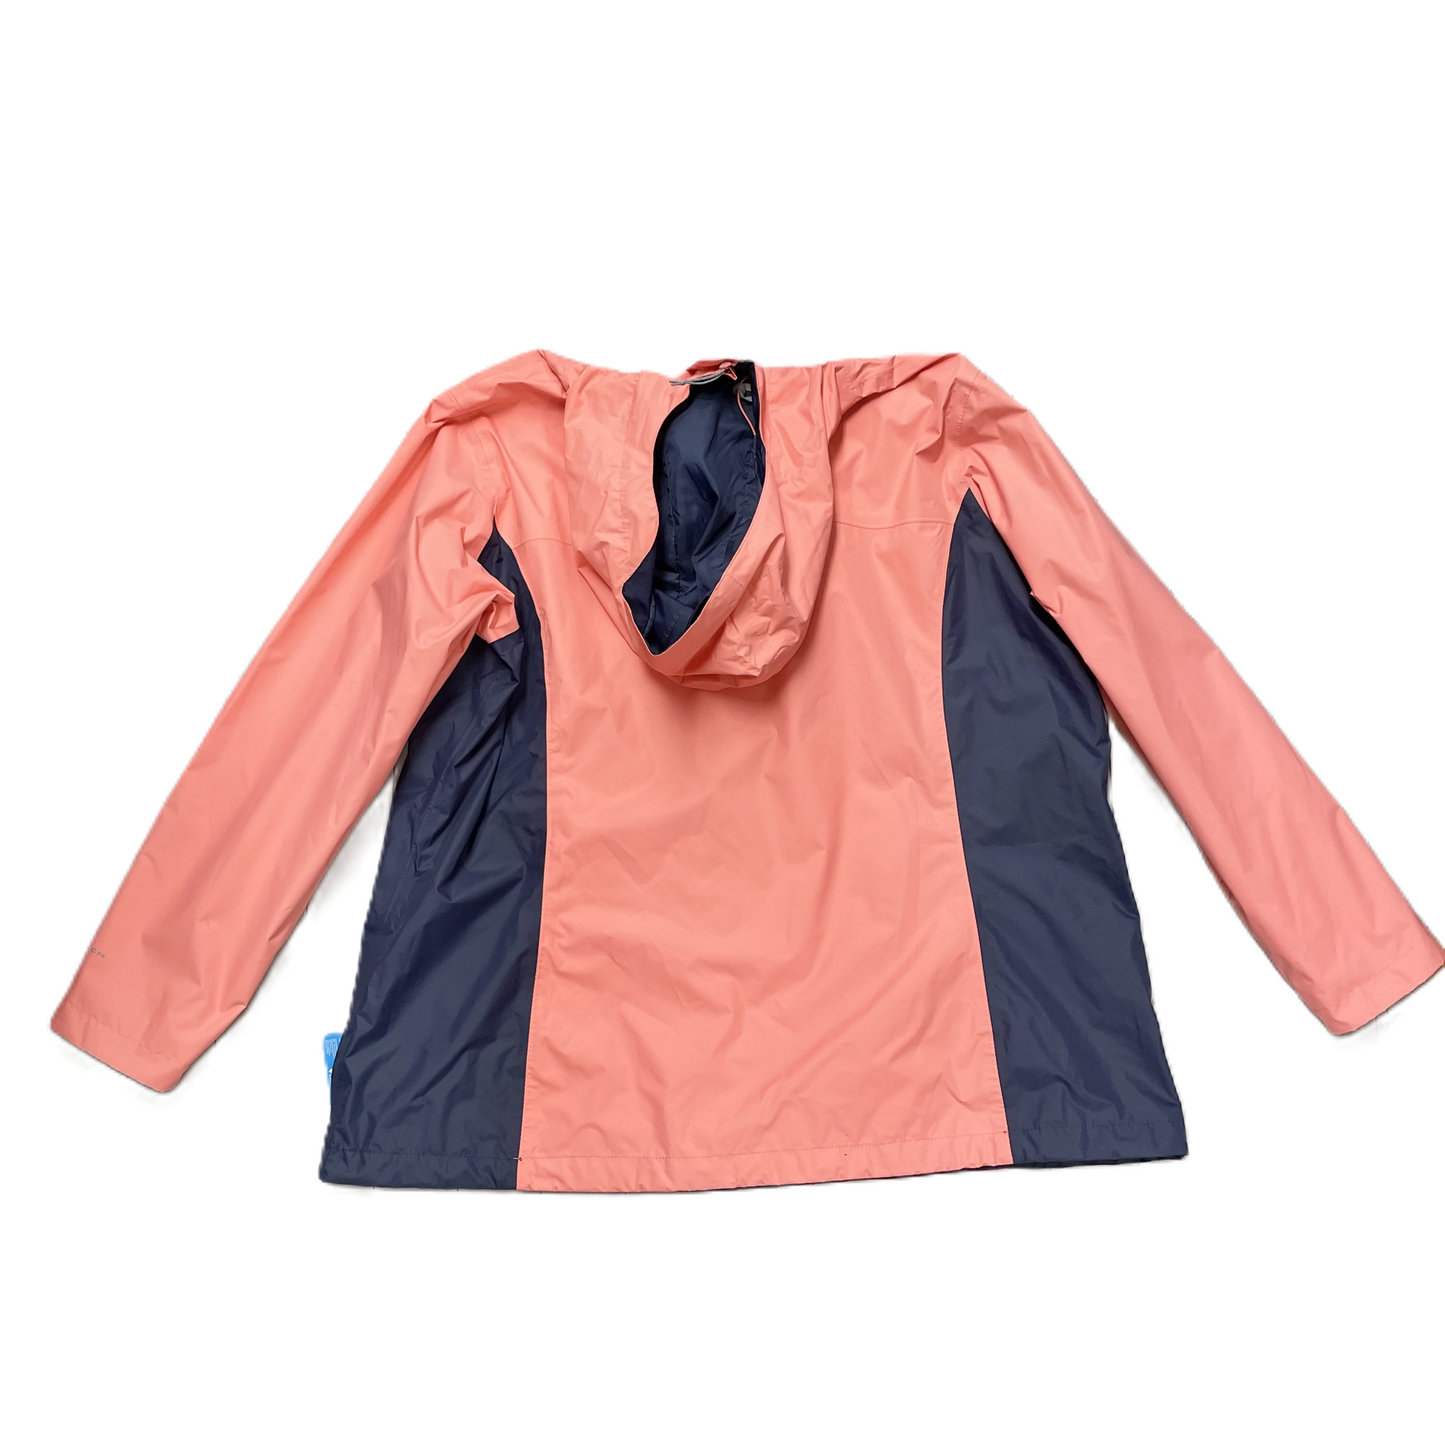 Jacket Windbreaker By Columbia  Size: 2x